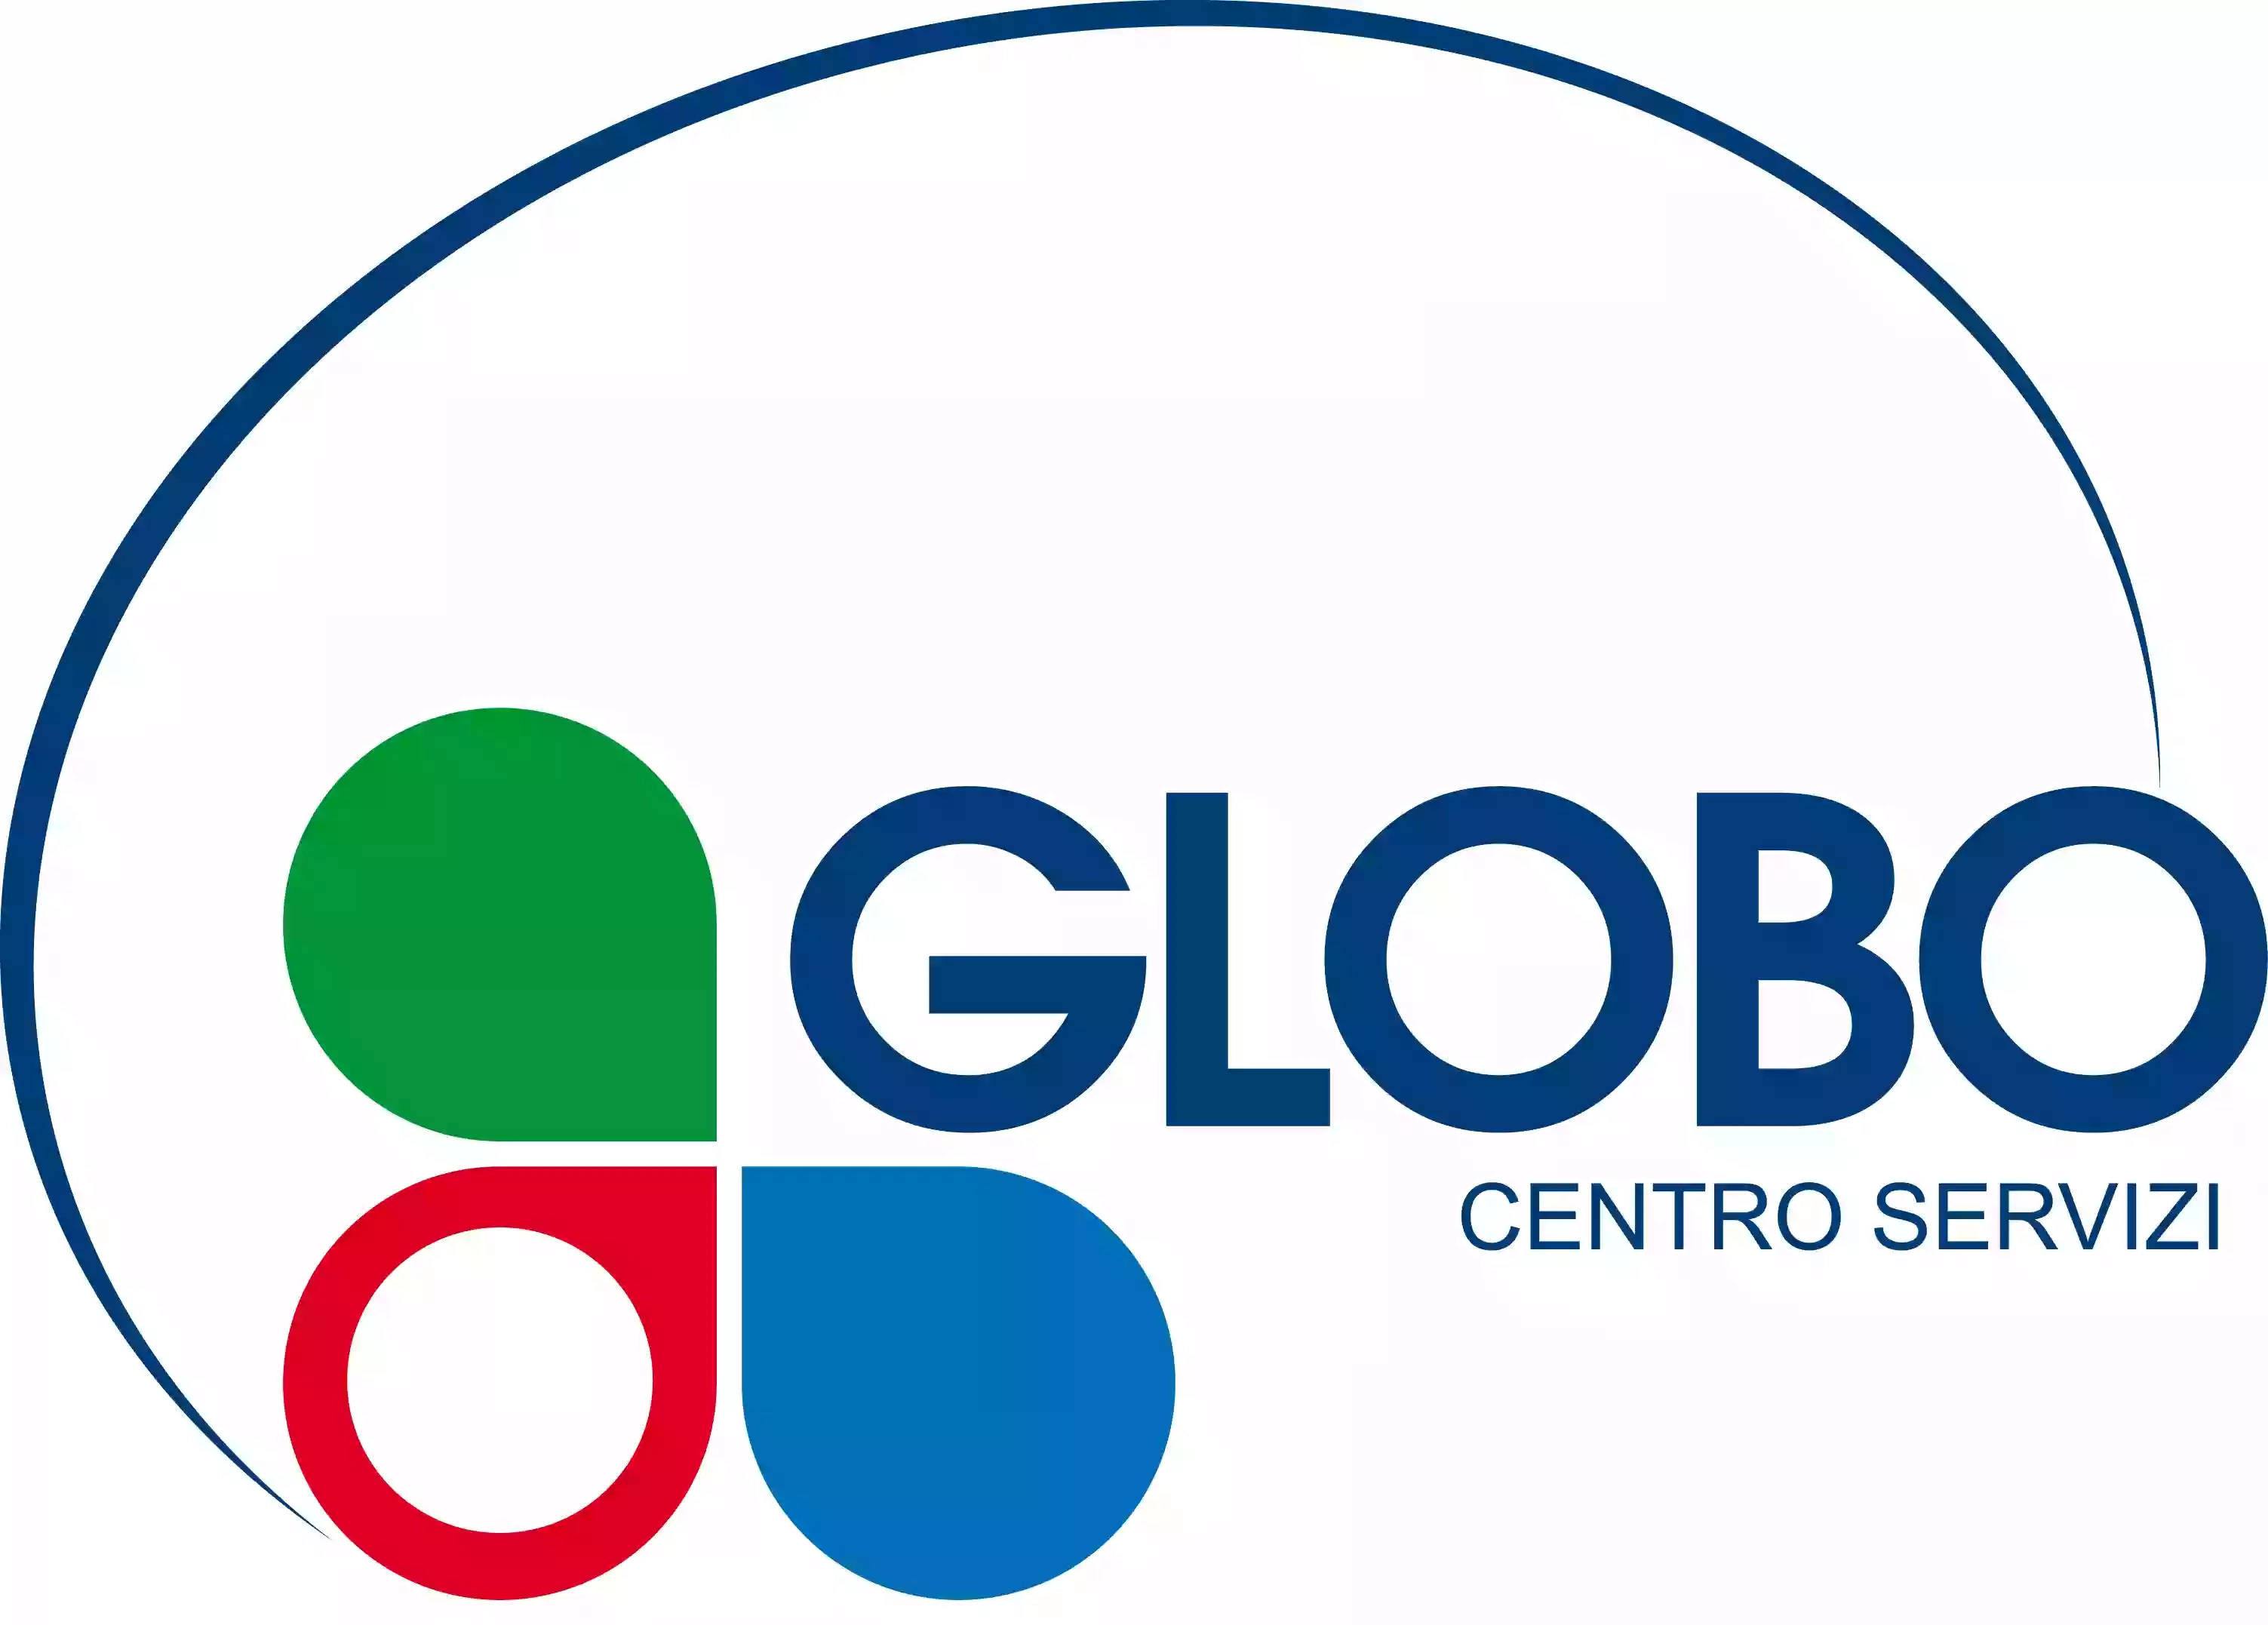 Centro Servizi Globo